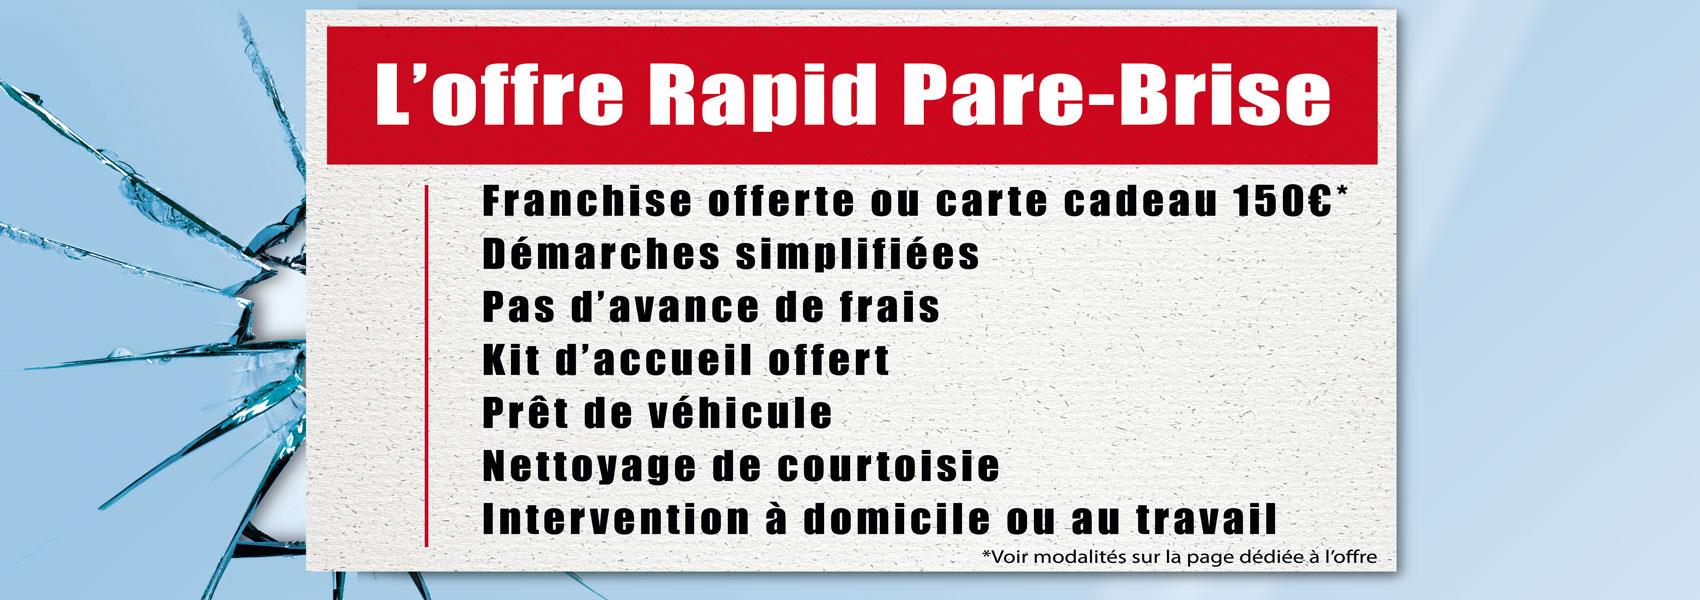 L' offre Rapid Pare-Brise : franchise offerte ou carte cadeau 150€ + intervention à domicile ou au travail